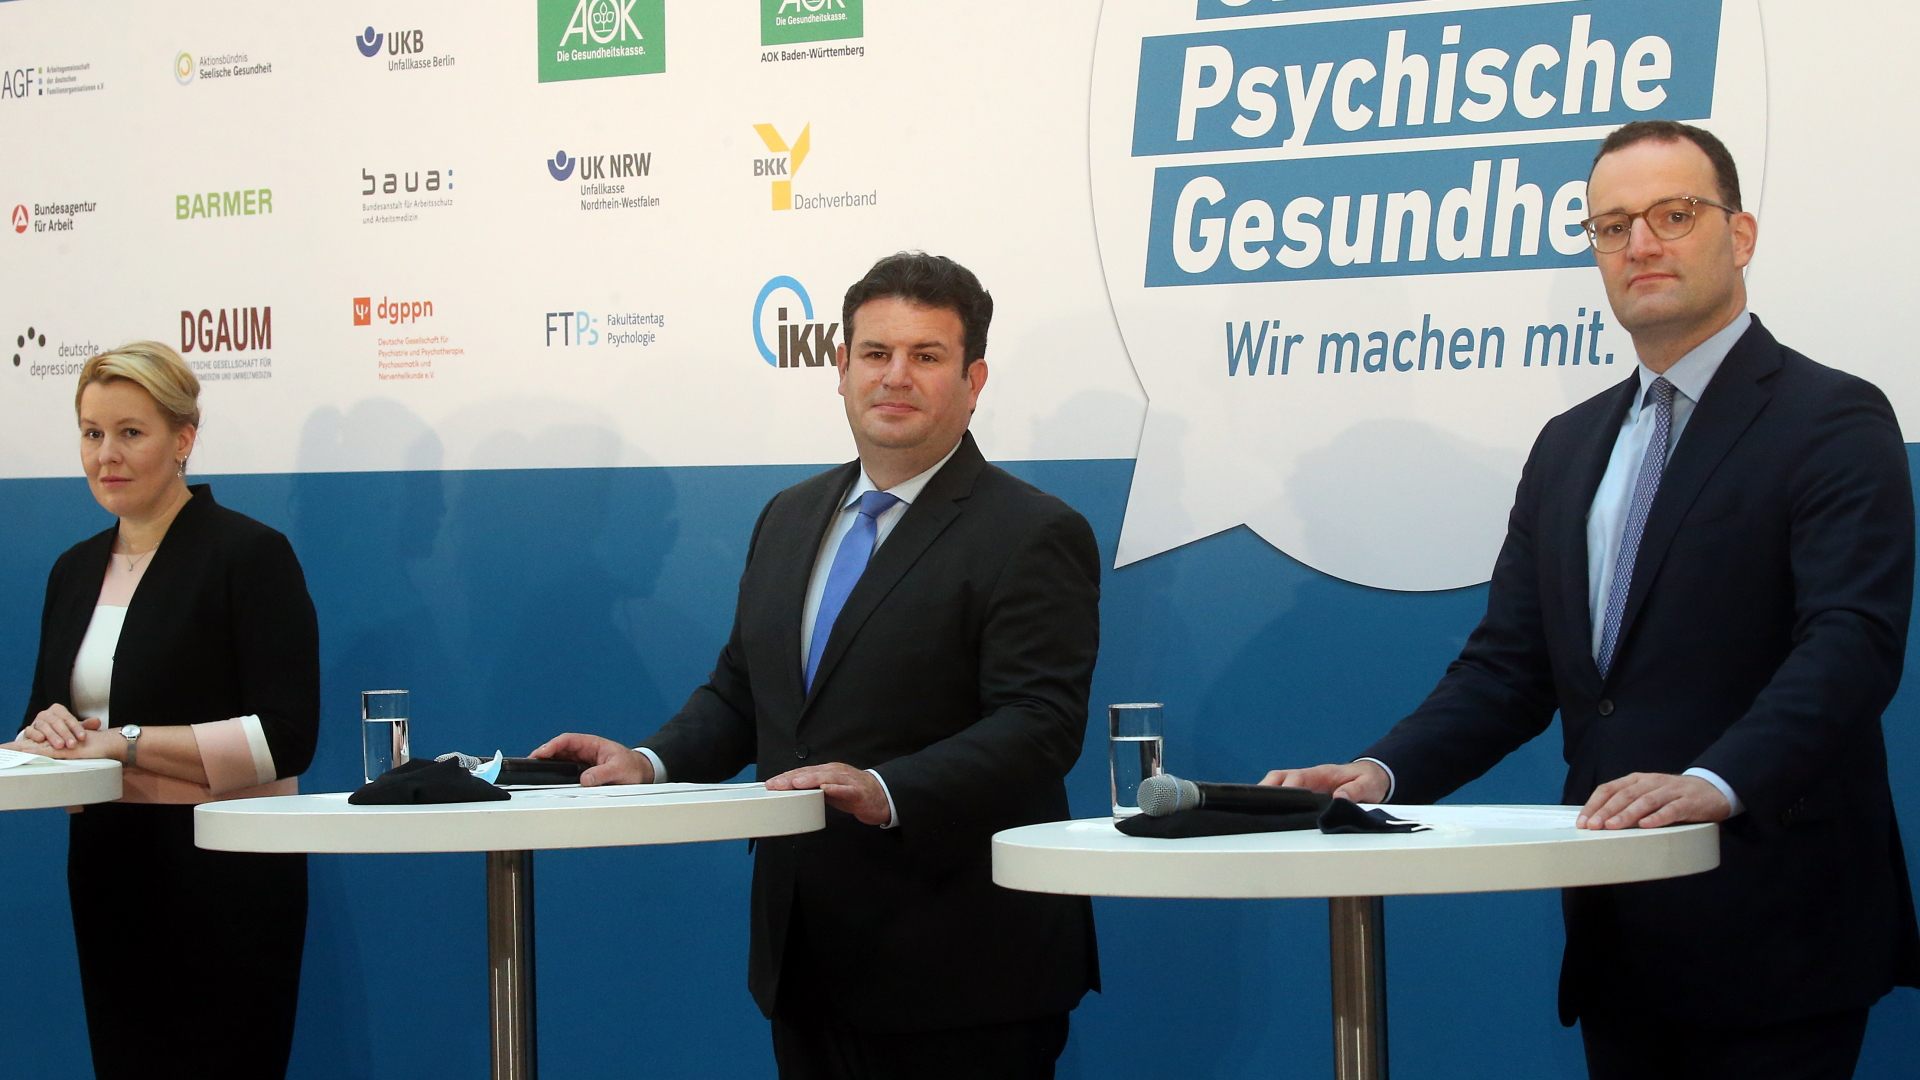 Bundesfamilienministerin Franziska Giffey (links), Bundesarbeitsminister Hubertus Heil und Bundesgesundheitsminister Jens Spahn (rechts) geben ein Statement ab.  | dpa